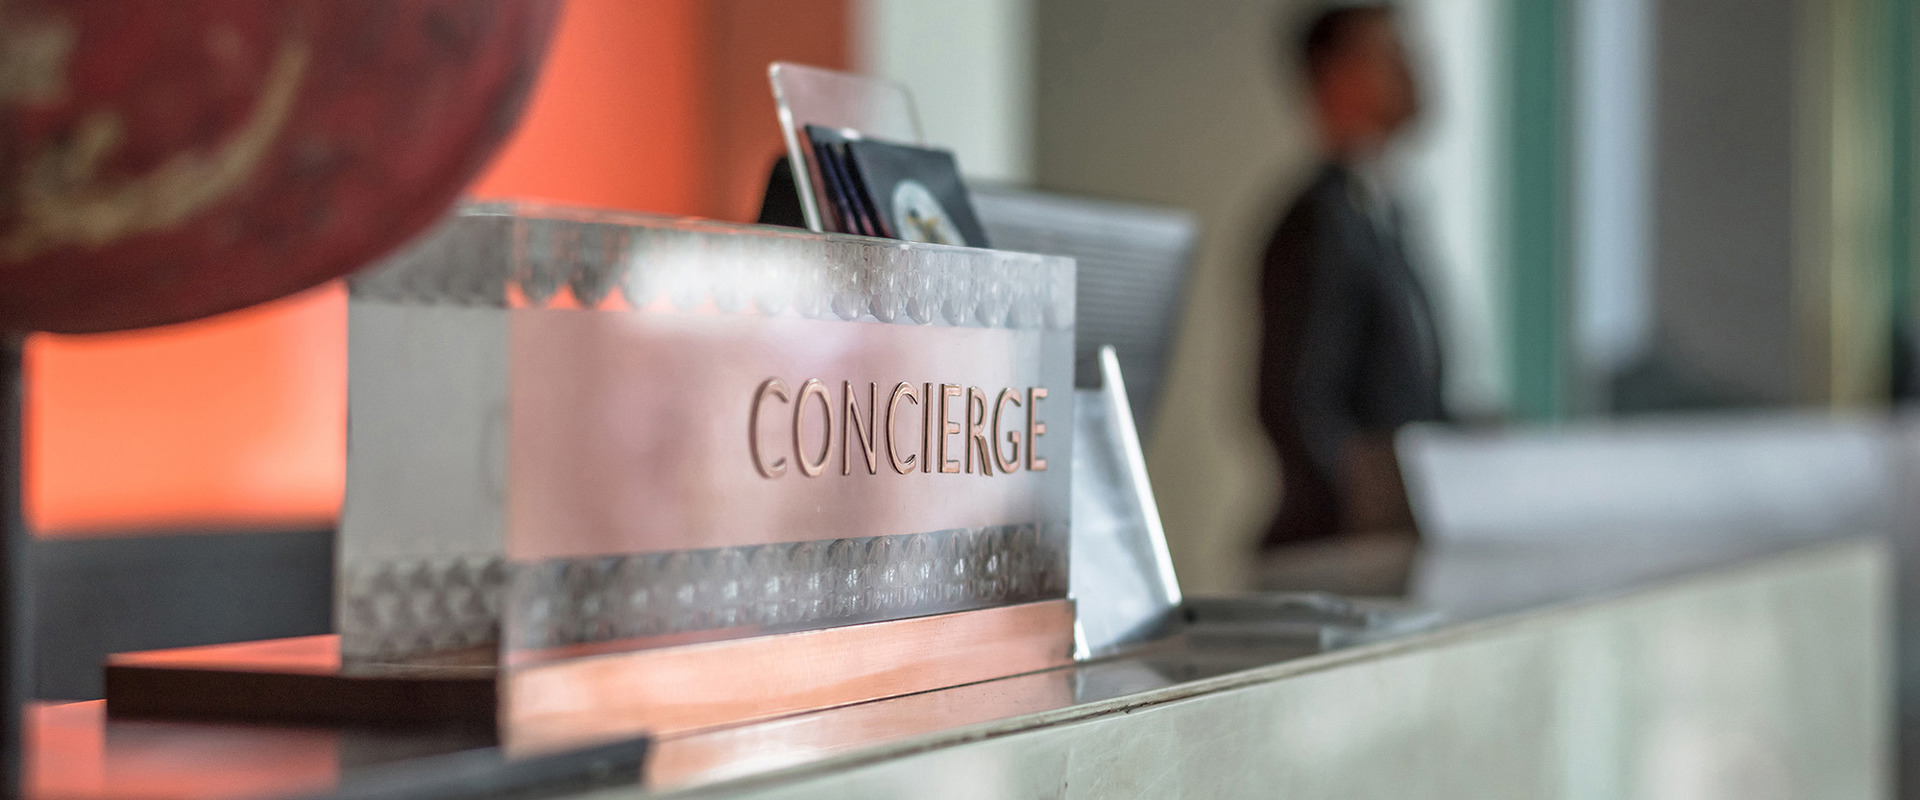 Concierge-Service am Empfang und Rezeption eines Unternehmens